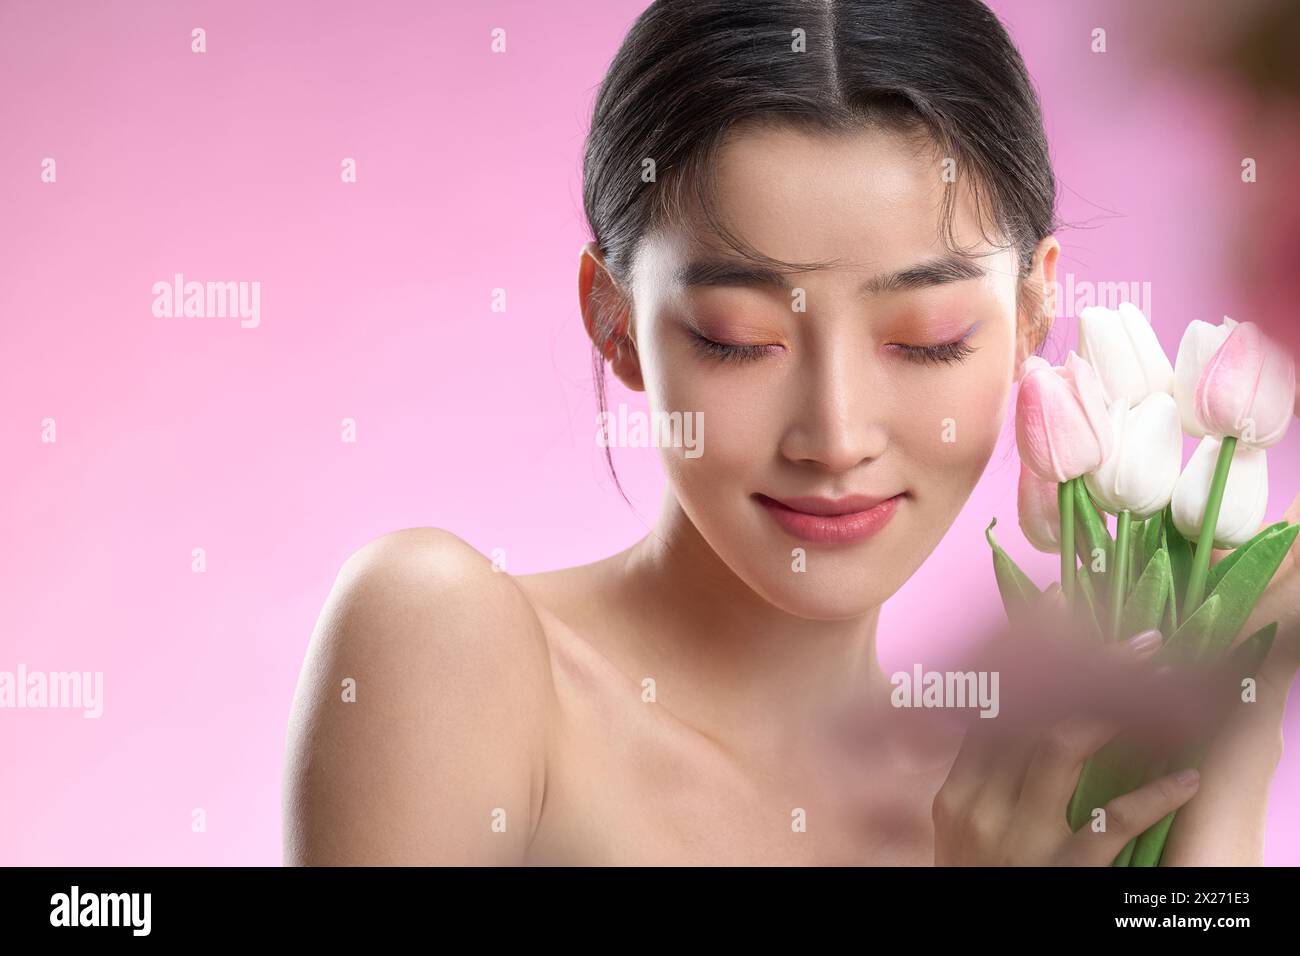 Porträts junger Schönheiten vor rosafarbenem Hintergrund Stockfoto